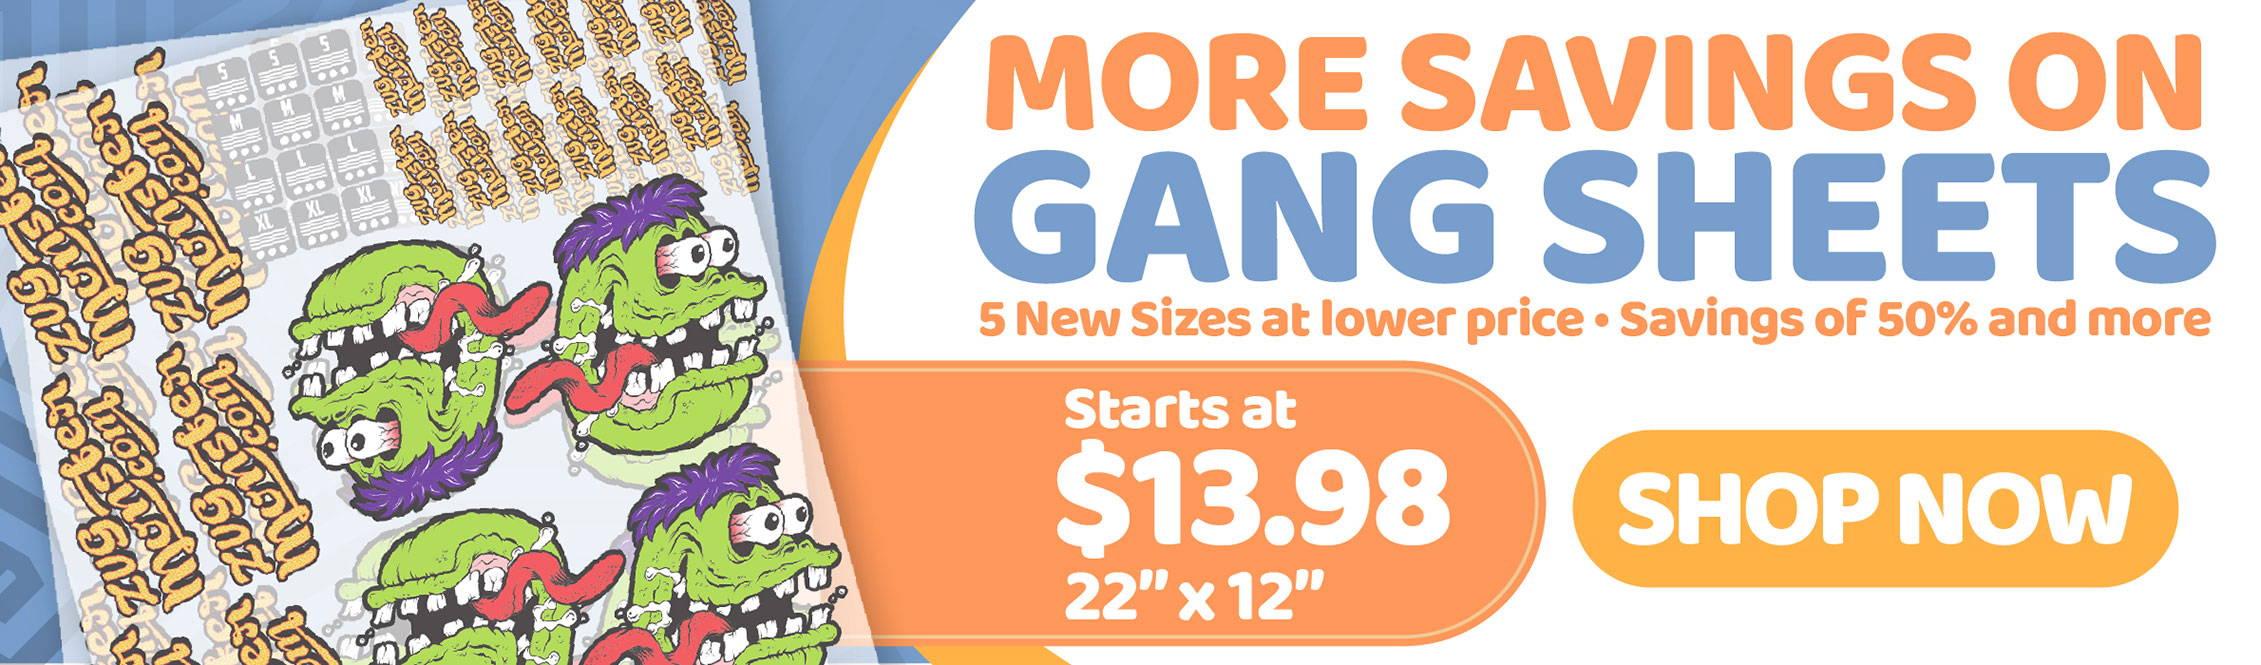 More Savings on Gang Sheets - Starting at $13.98